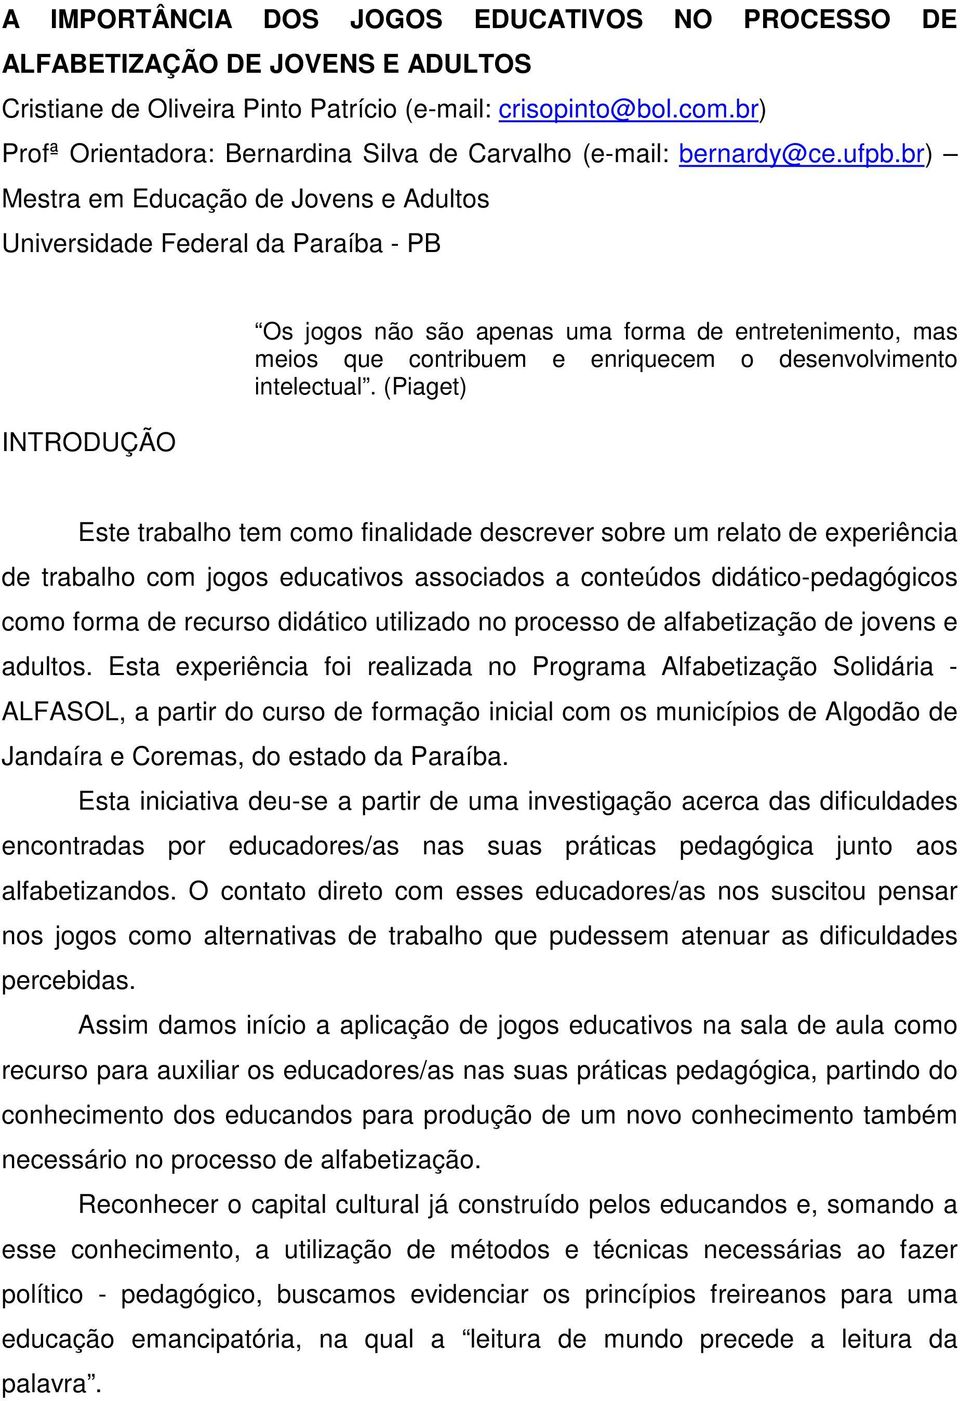 br) Mestra em Educação de Jovens e Adultos Universidade Federal da Paraíba - PB INTRODUÇÃO Os jogos não são apenas uma forma de entretenimento, mas meios que contribuem e enriquecem o desenvolvimento